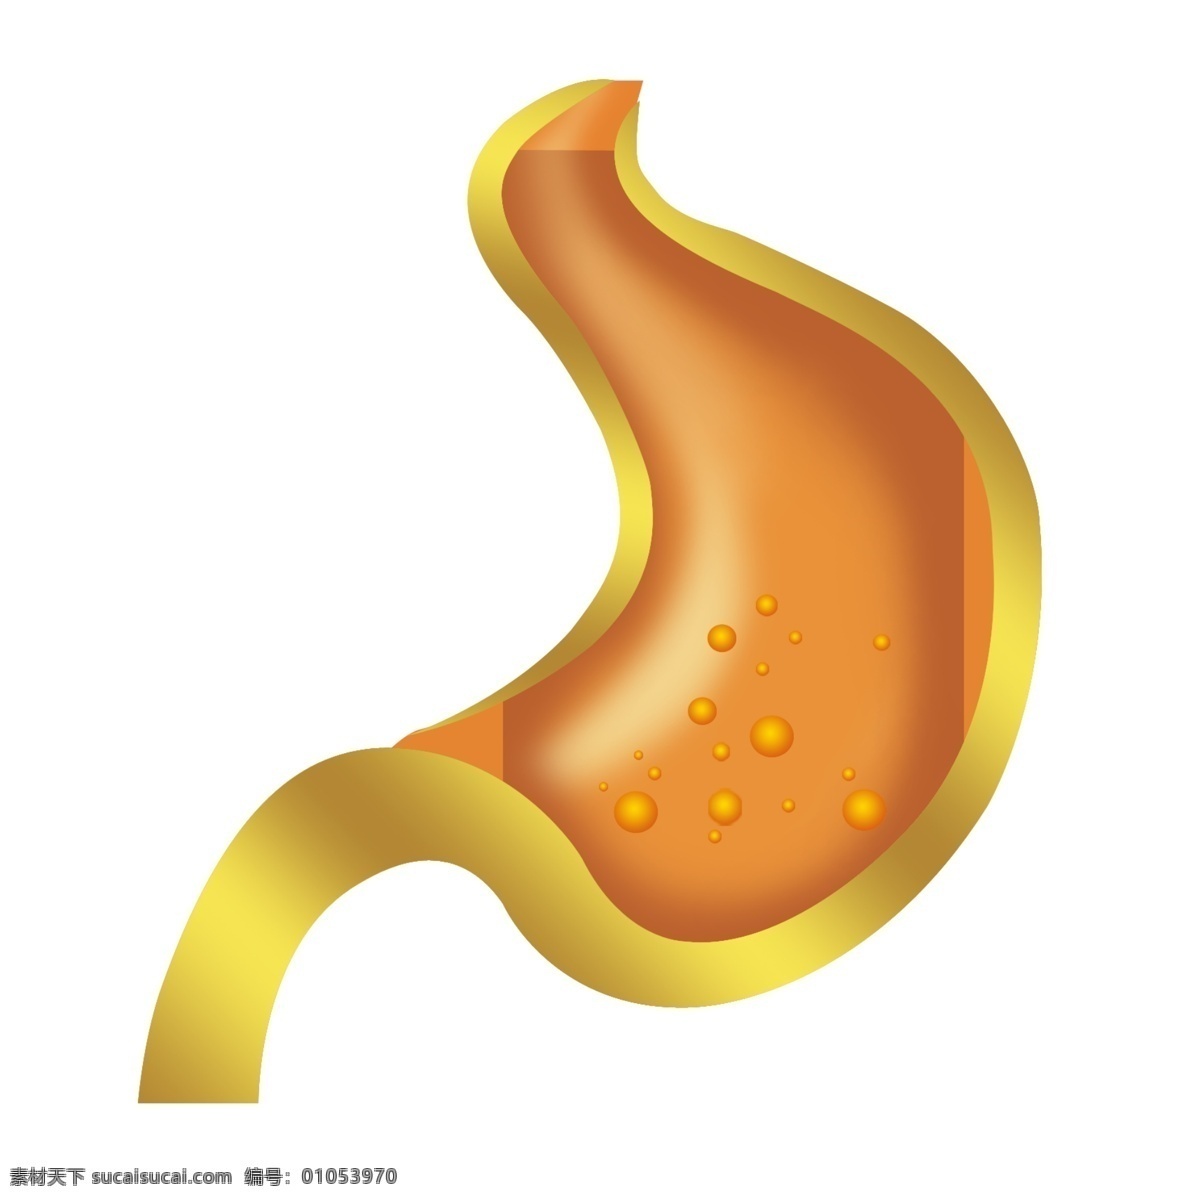 肠胃分层图 胃肠 肠 胃 矢量胃 金色 金色胃 胃膜 消化道 胃炎 胃痛 胃镜 胃病 psd分层 分层 源文件